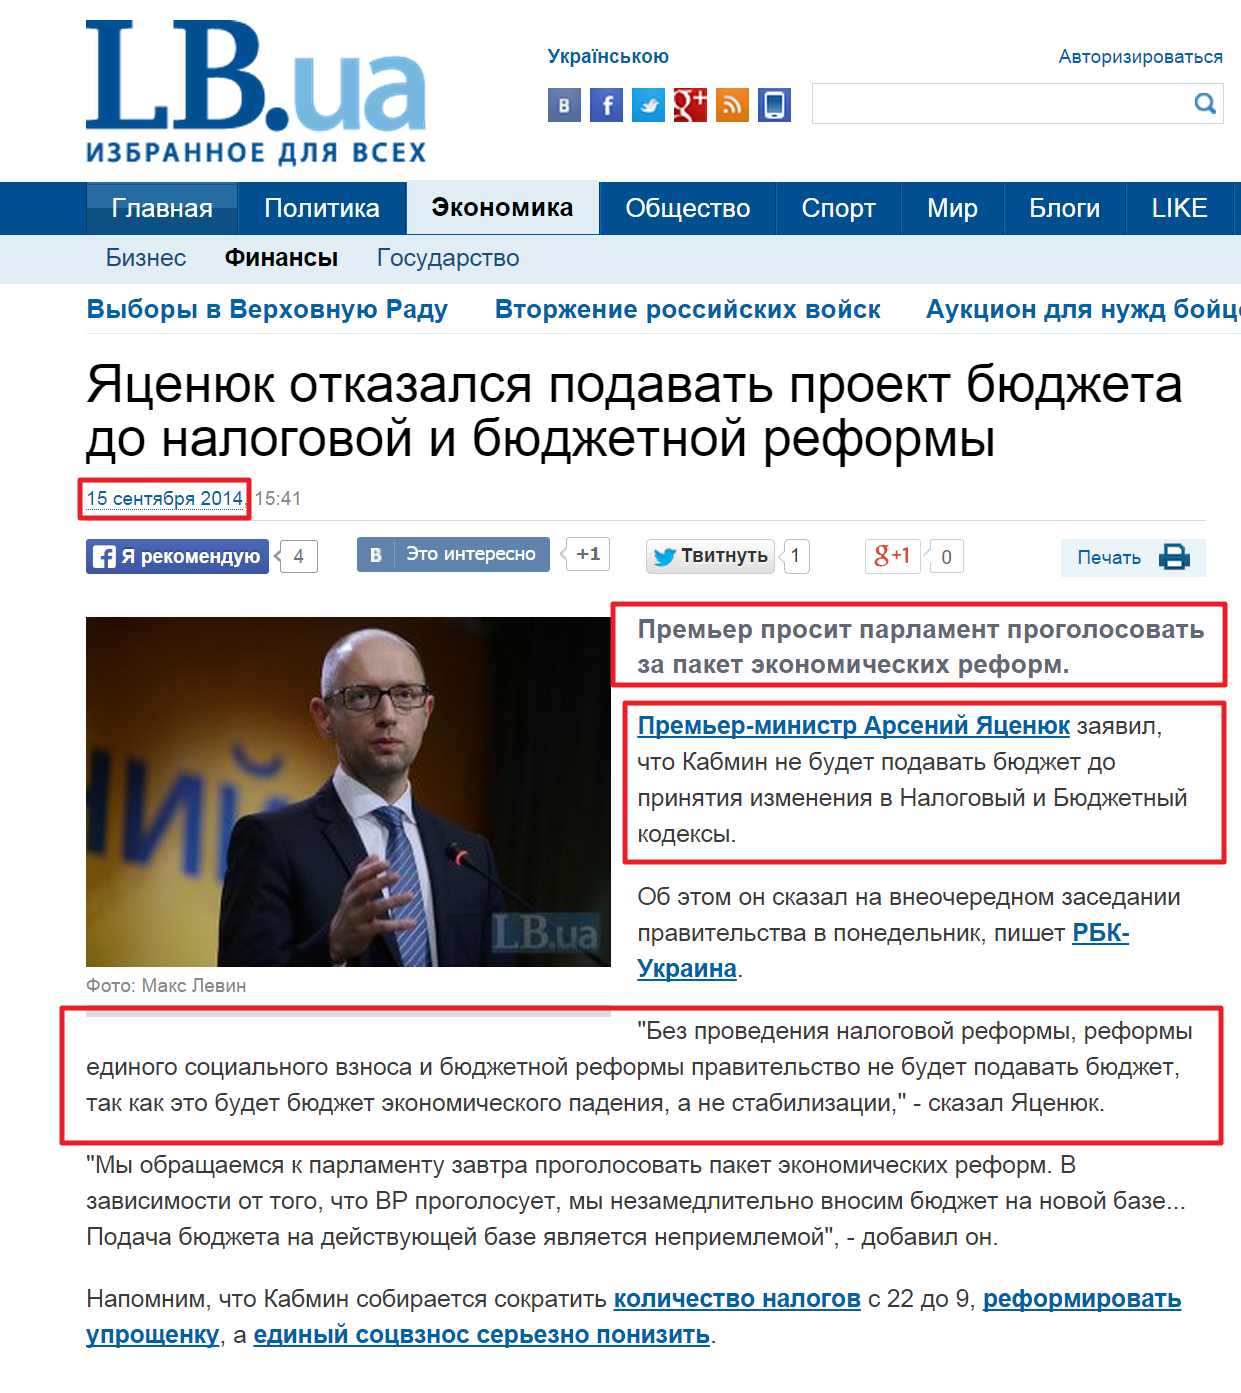 http://economics.lb.ua/finances/2014/09/15/279417_yatsenyuk_otkazalsya_podavat_proekt.html